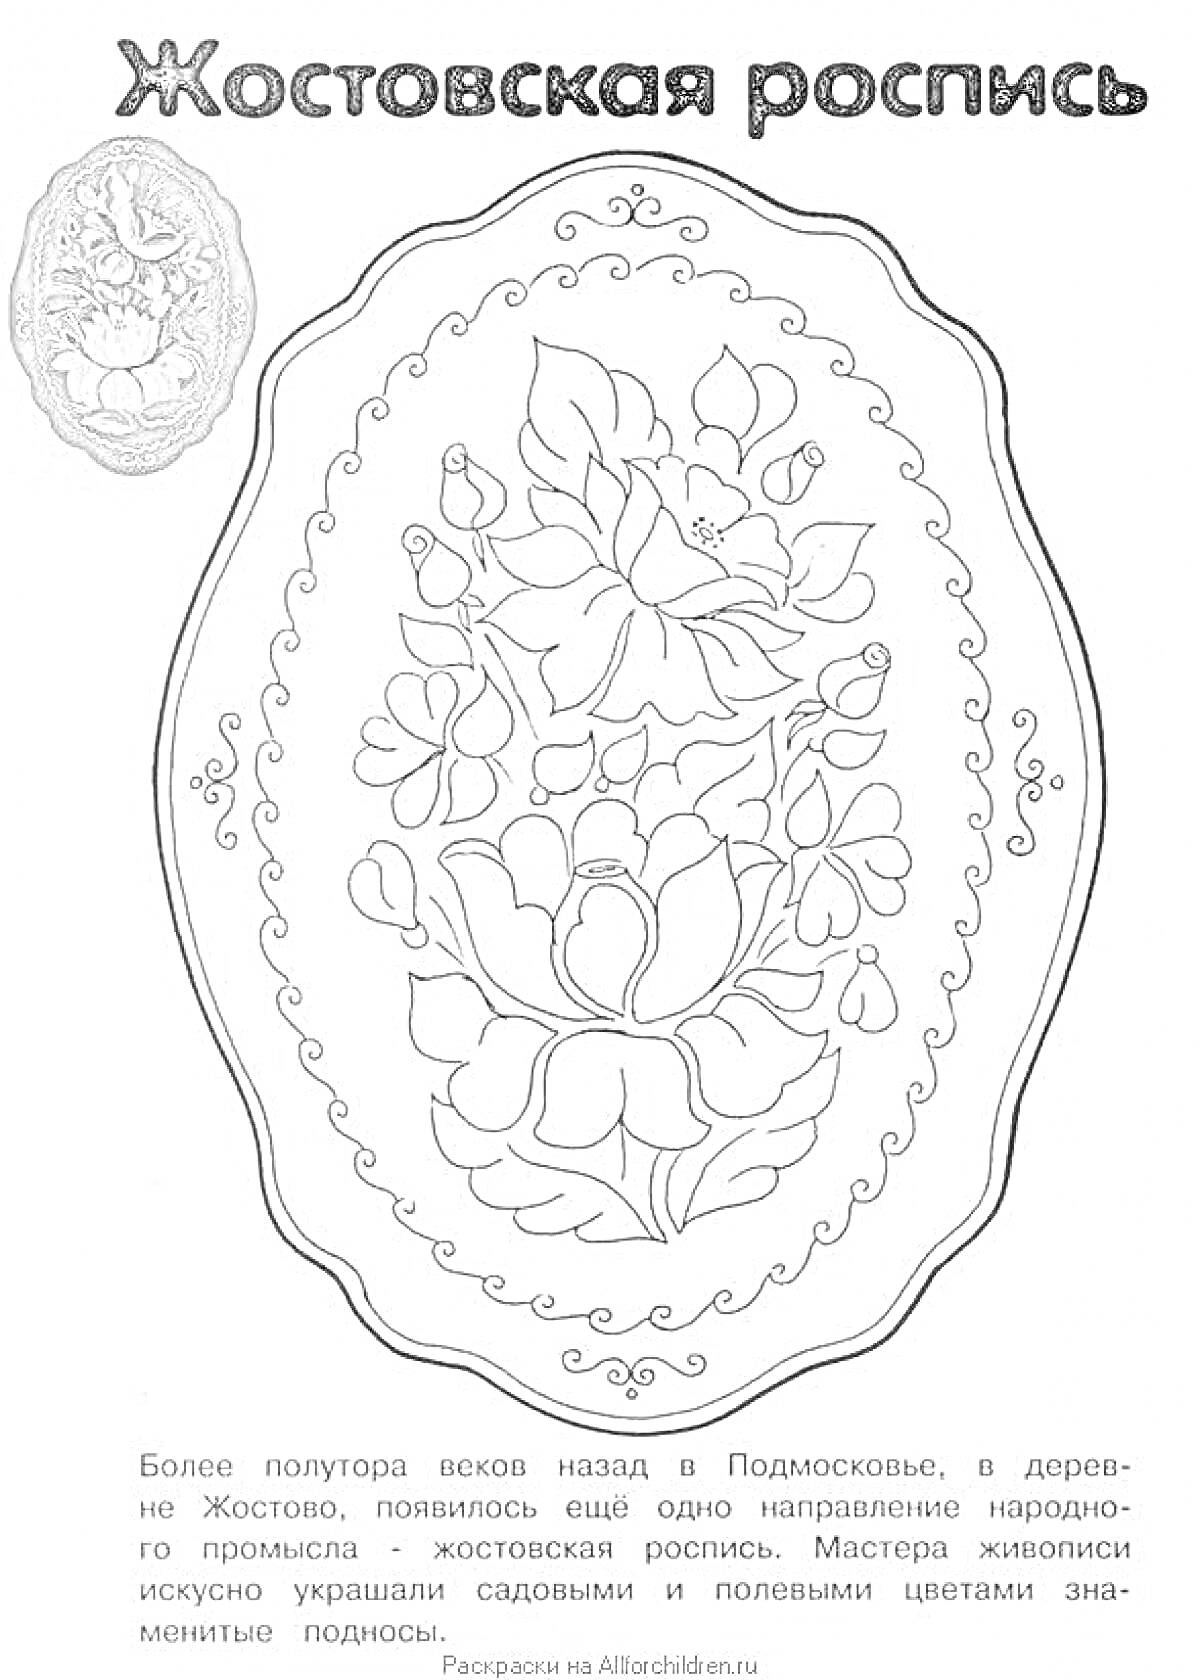 Раскраска Жостовский поднос с букетом цветов и декоративным орнаментом по краю